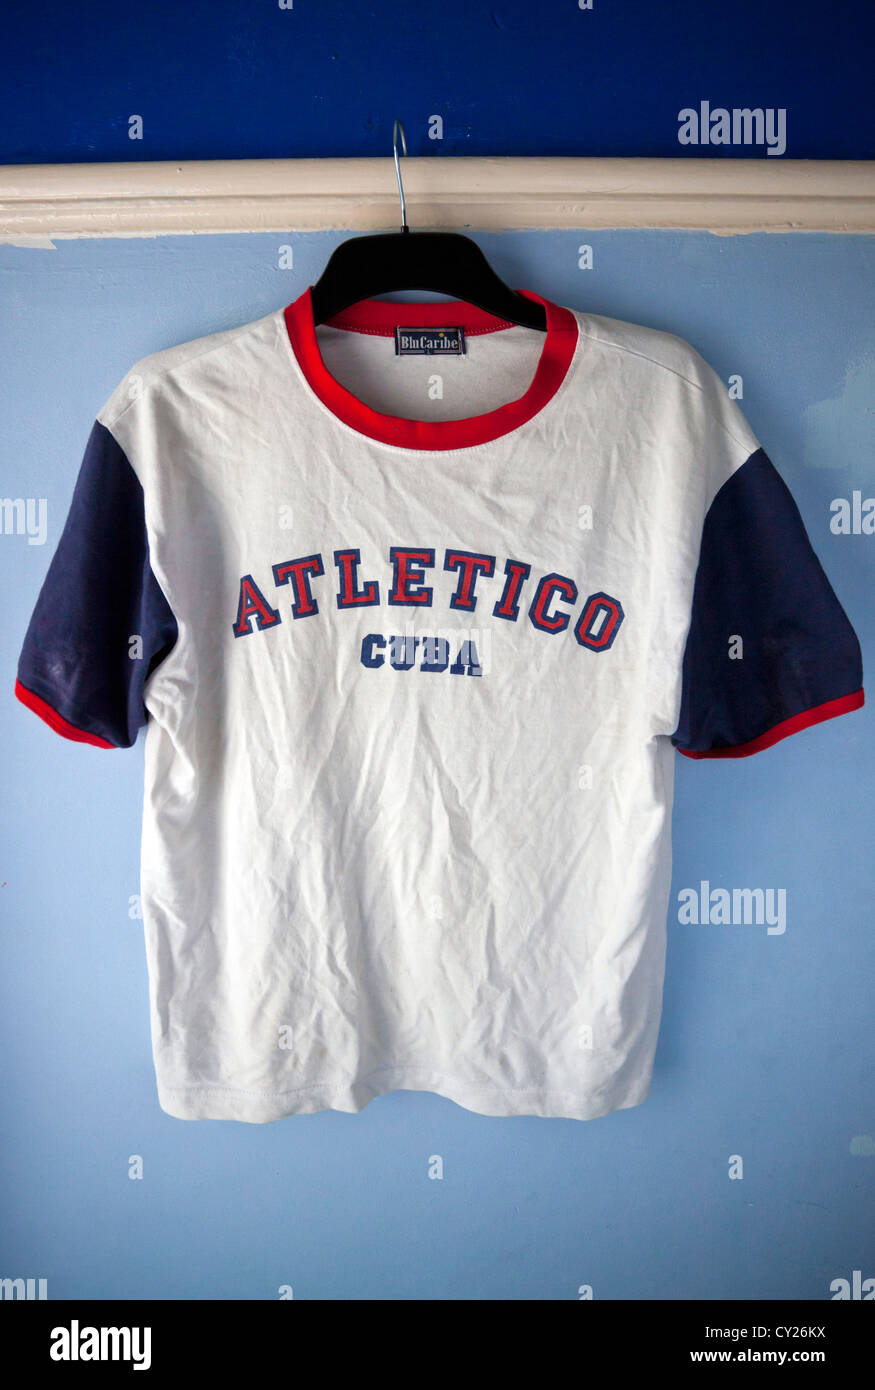 Atletico Cuba T-shirt Banque D'Images